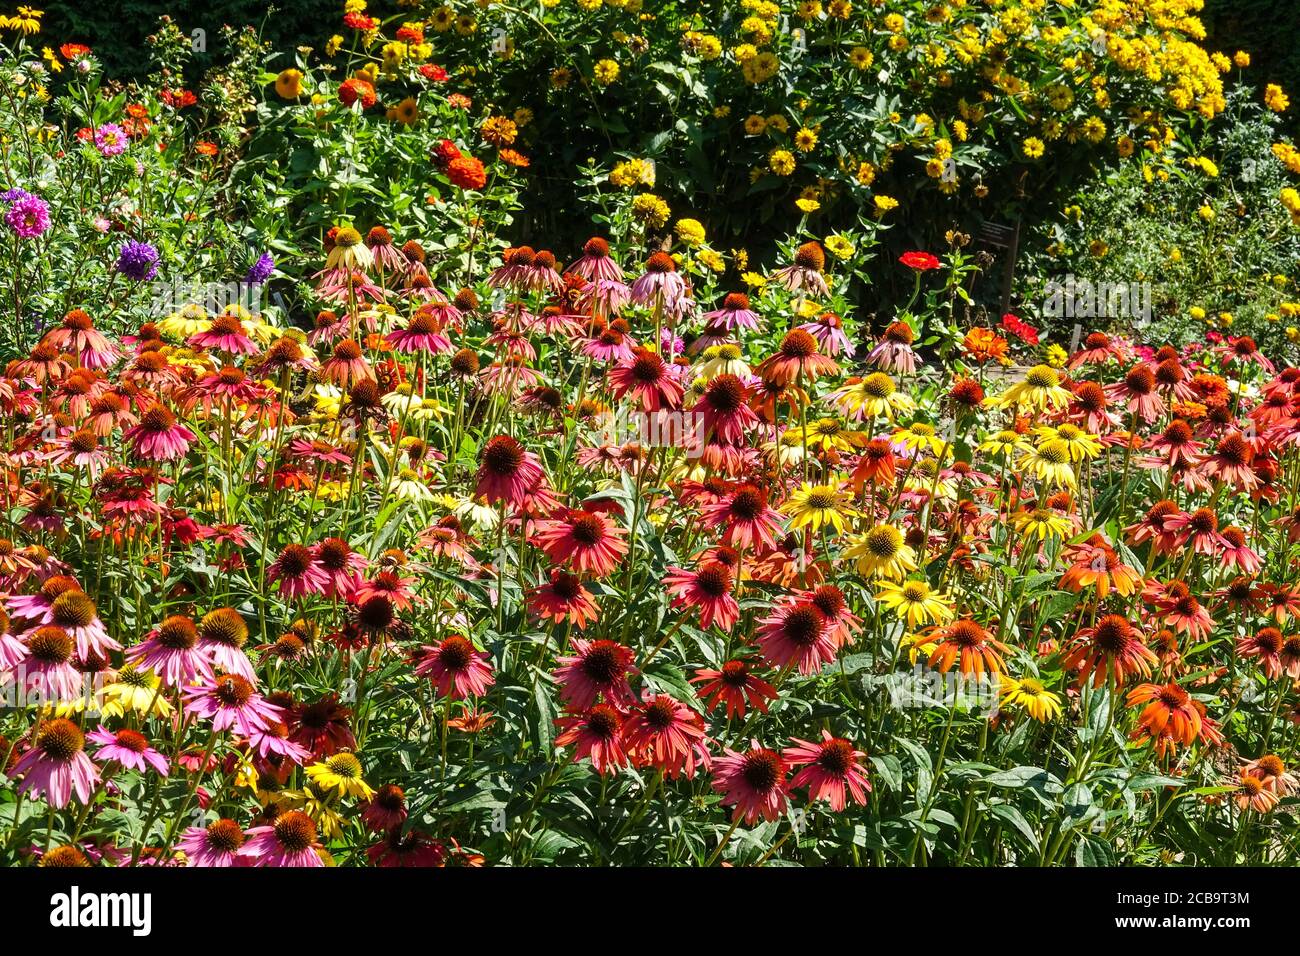 Atemberaubende Blumen in einem bunten Garten, Blumenbeet von Echinacea Cheyenne Spirit verschiedene Farben, Hintergrund Zinnias Heliopsis Sommersonne aka Summer Sun Stockfoto